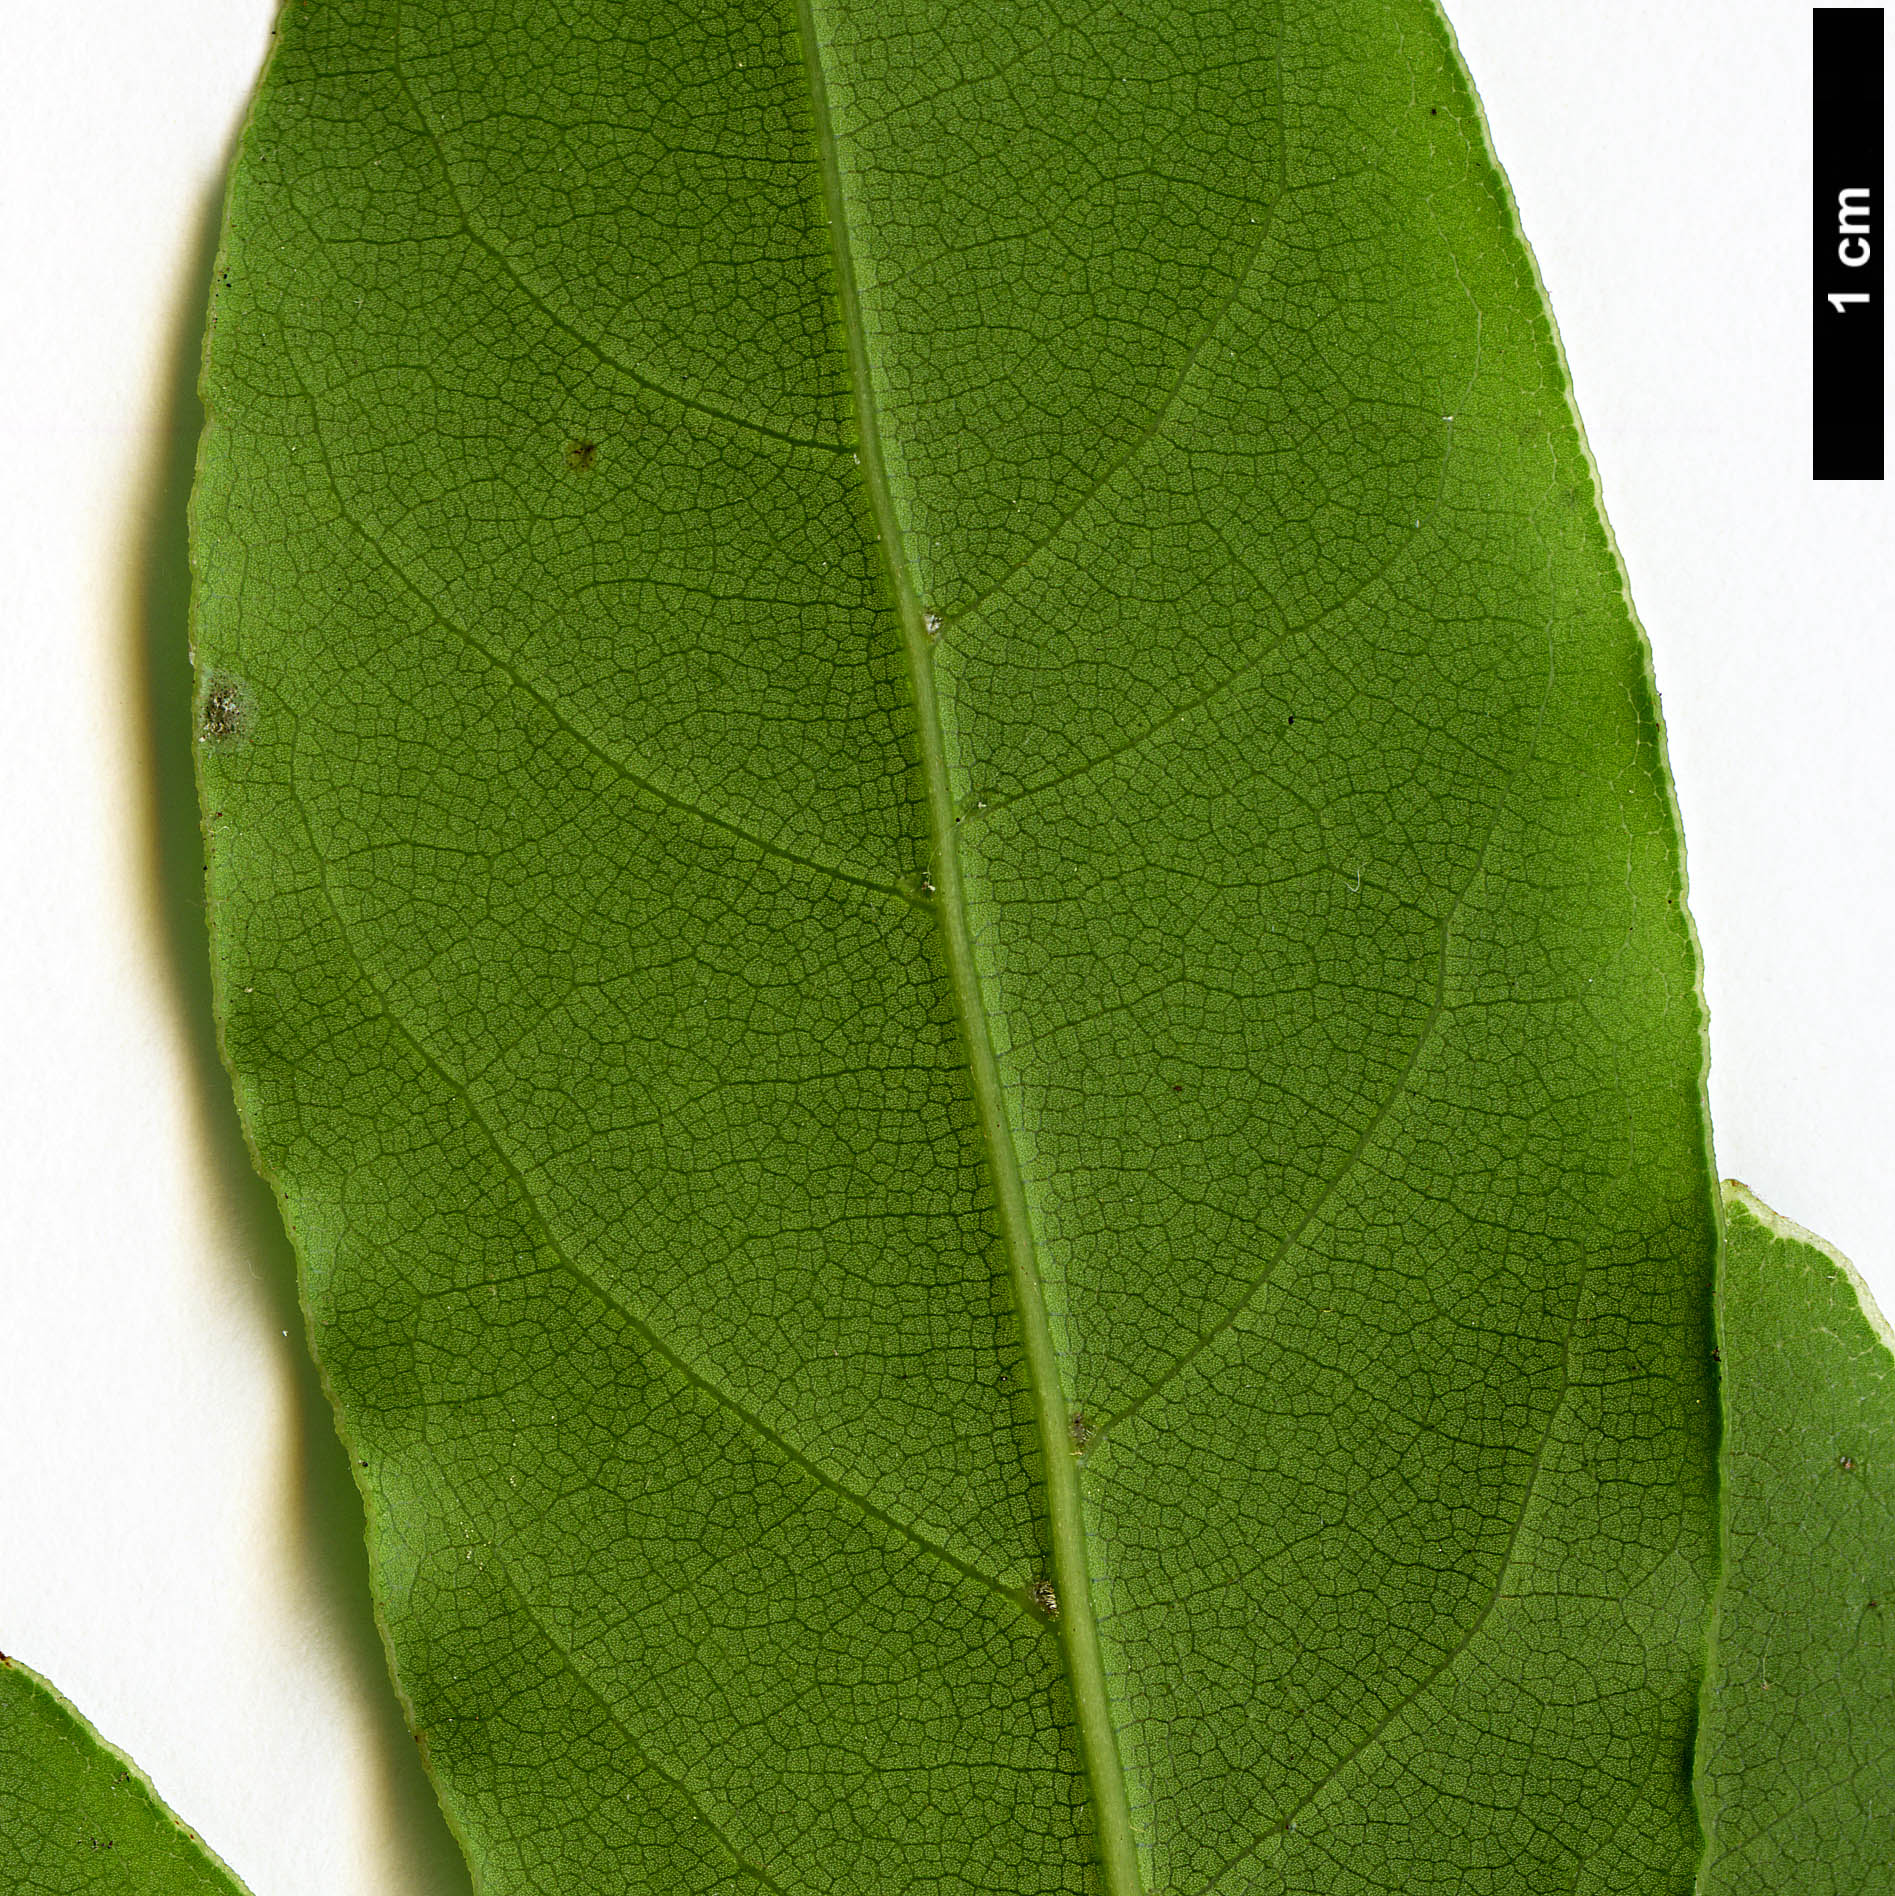 High resolution image: Family: Lauraceae - Genus: Laurus - Taxon: nobilis